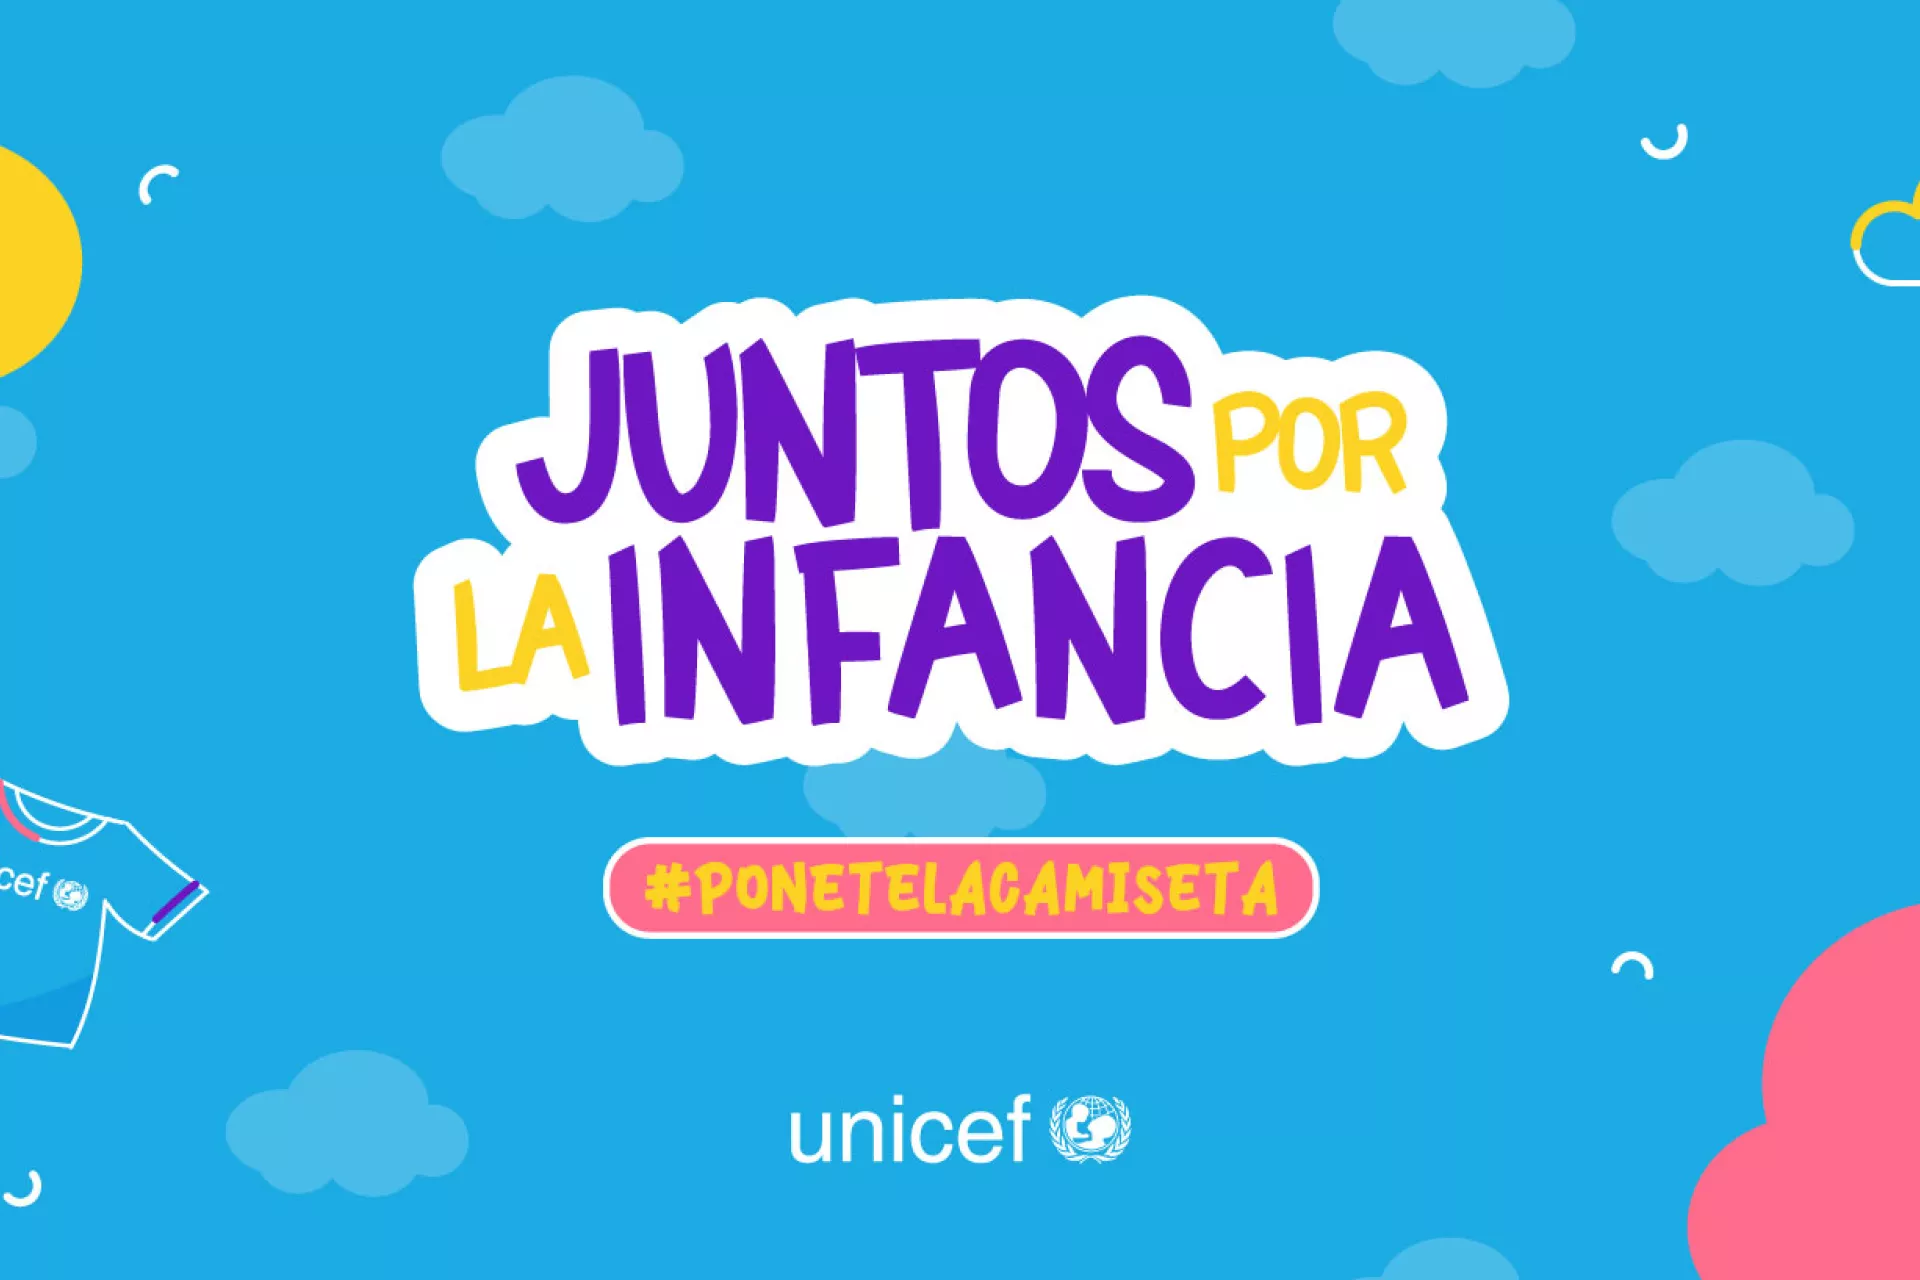 Gráfica en la que se lee "Juntos por la infancia", "Ponete la camiseta" y debajo, el logo de UNICEF.